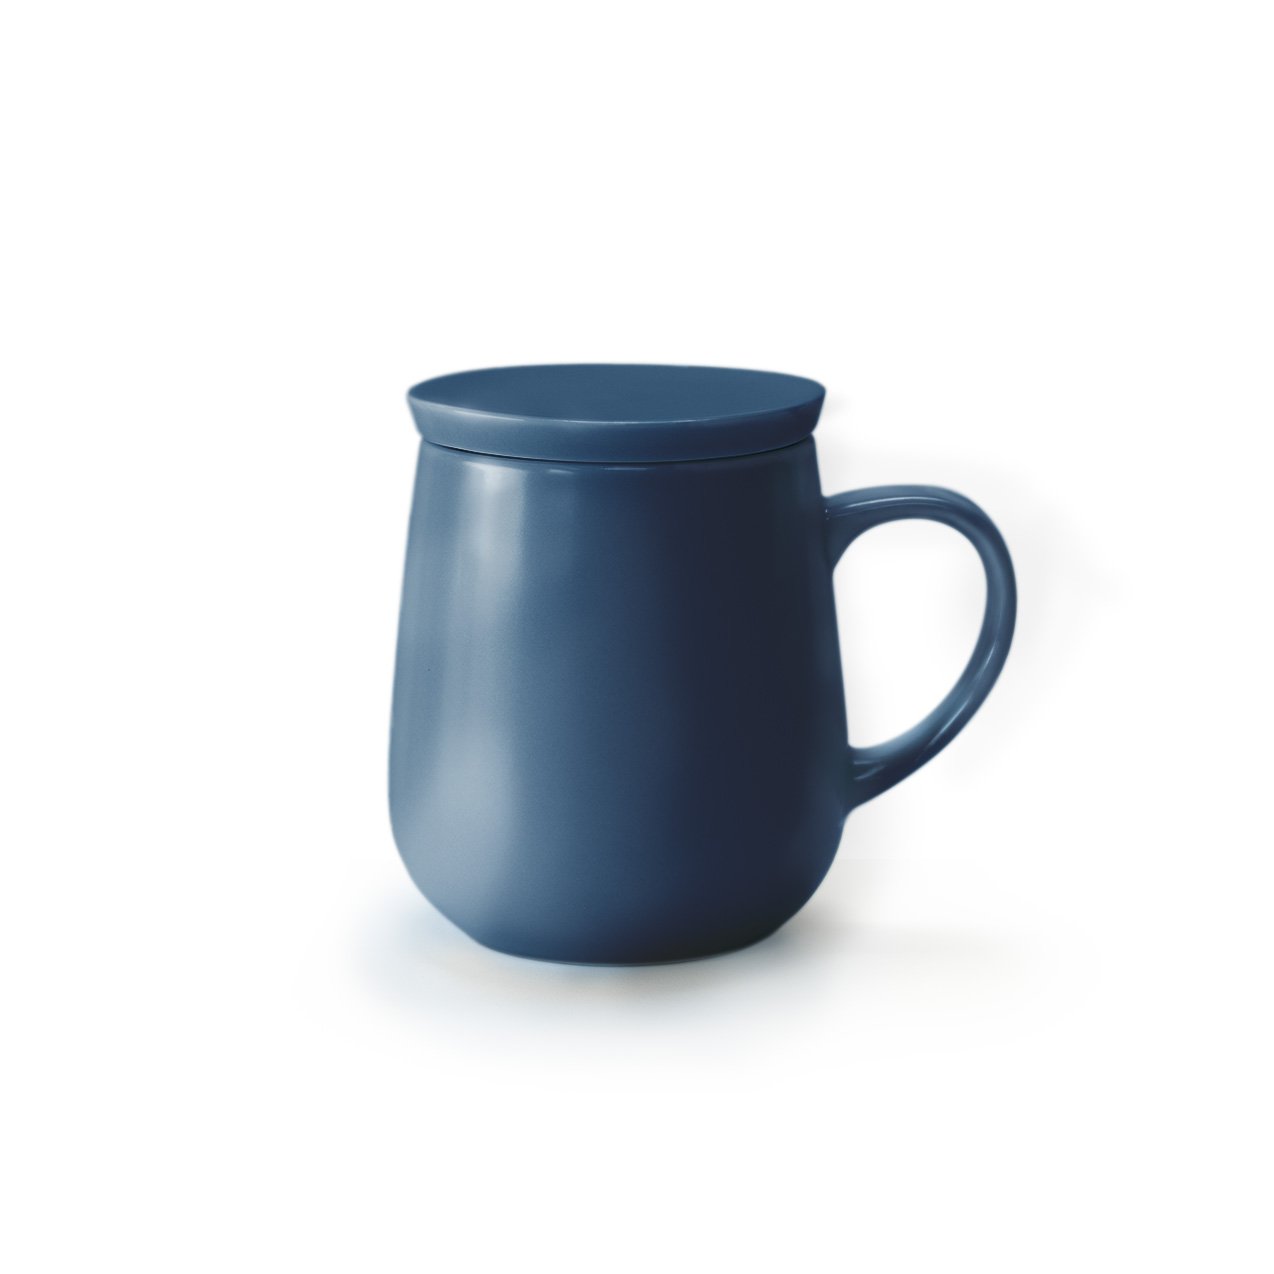 Small navy mug with lid